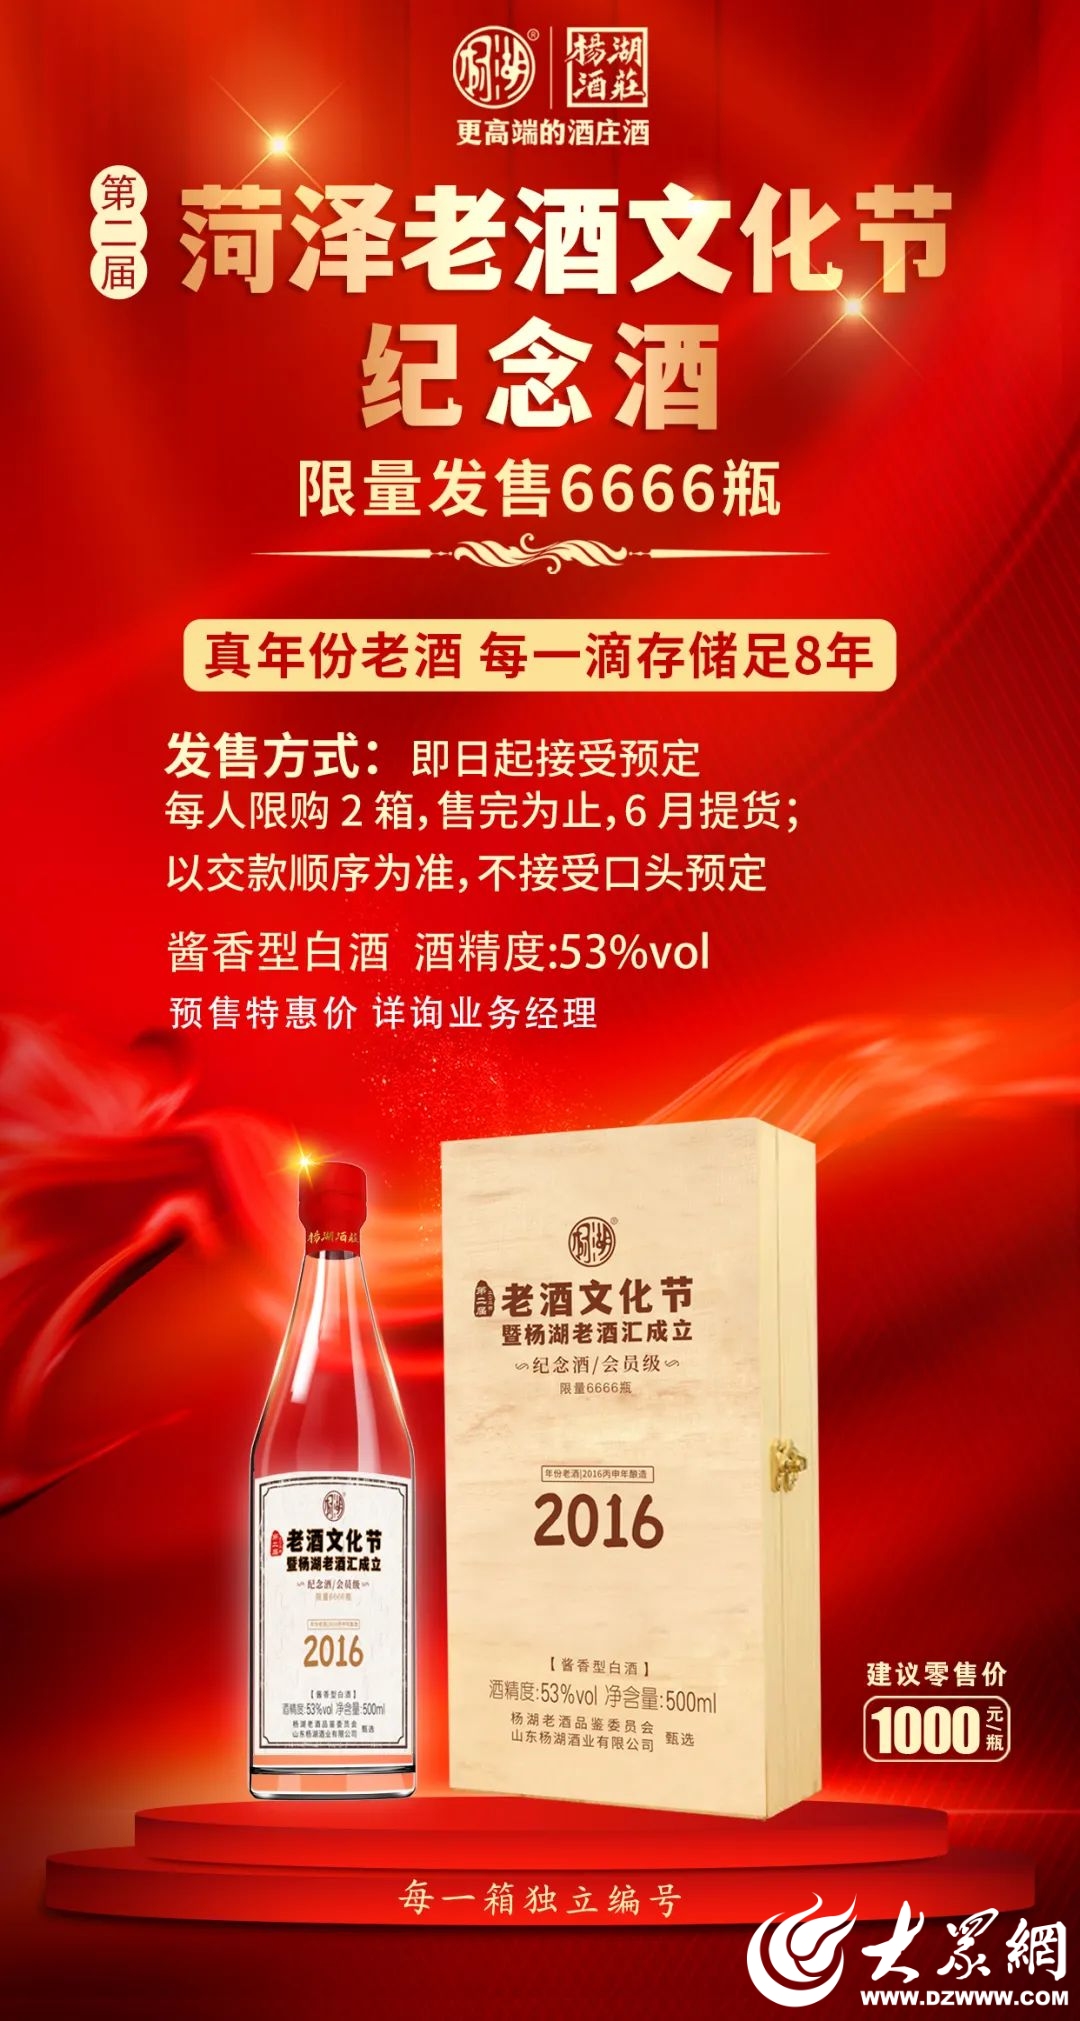 第二届菏泽老酒文化节5月19日召开 限量版纪念酒正式预售